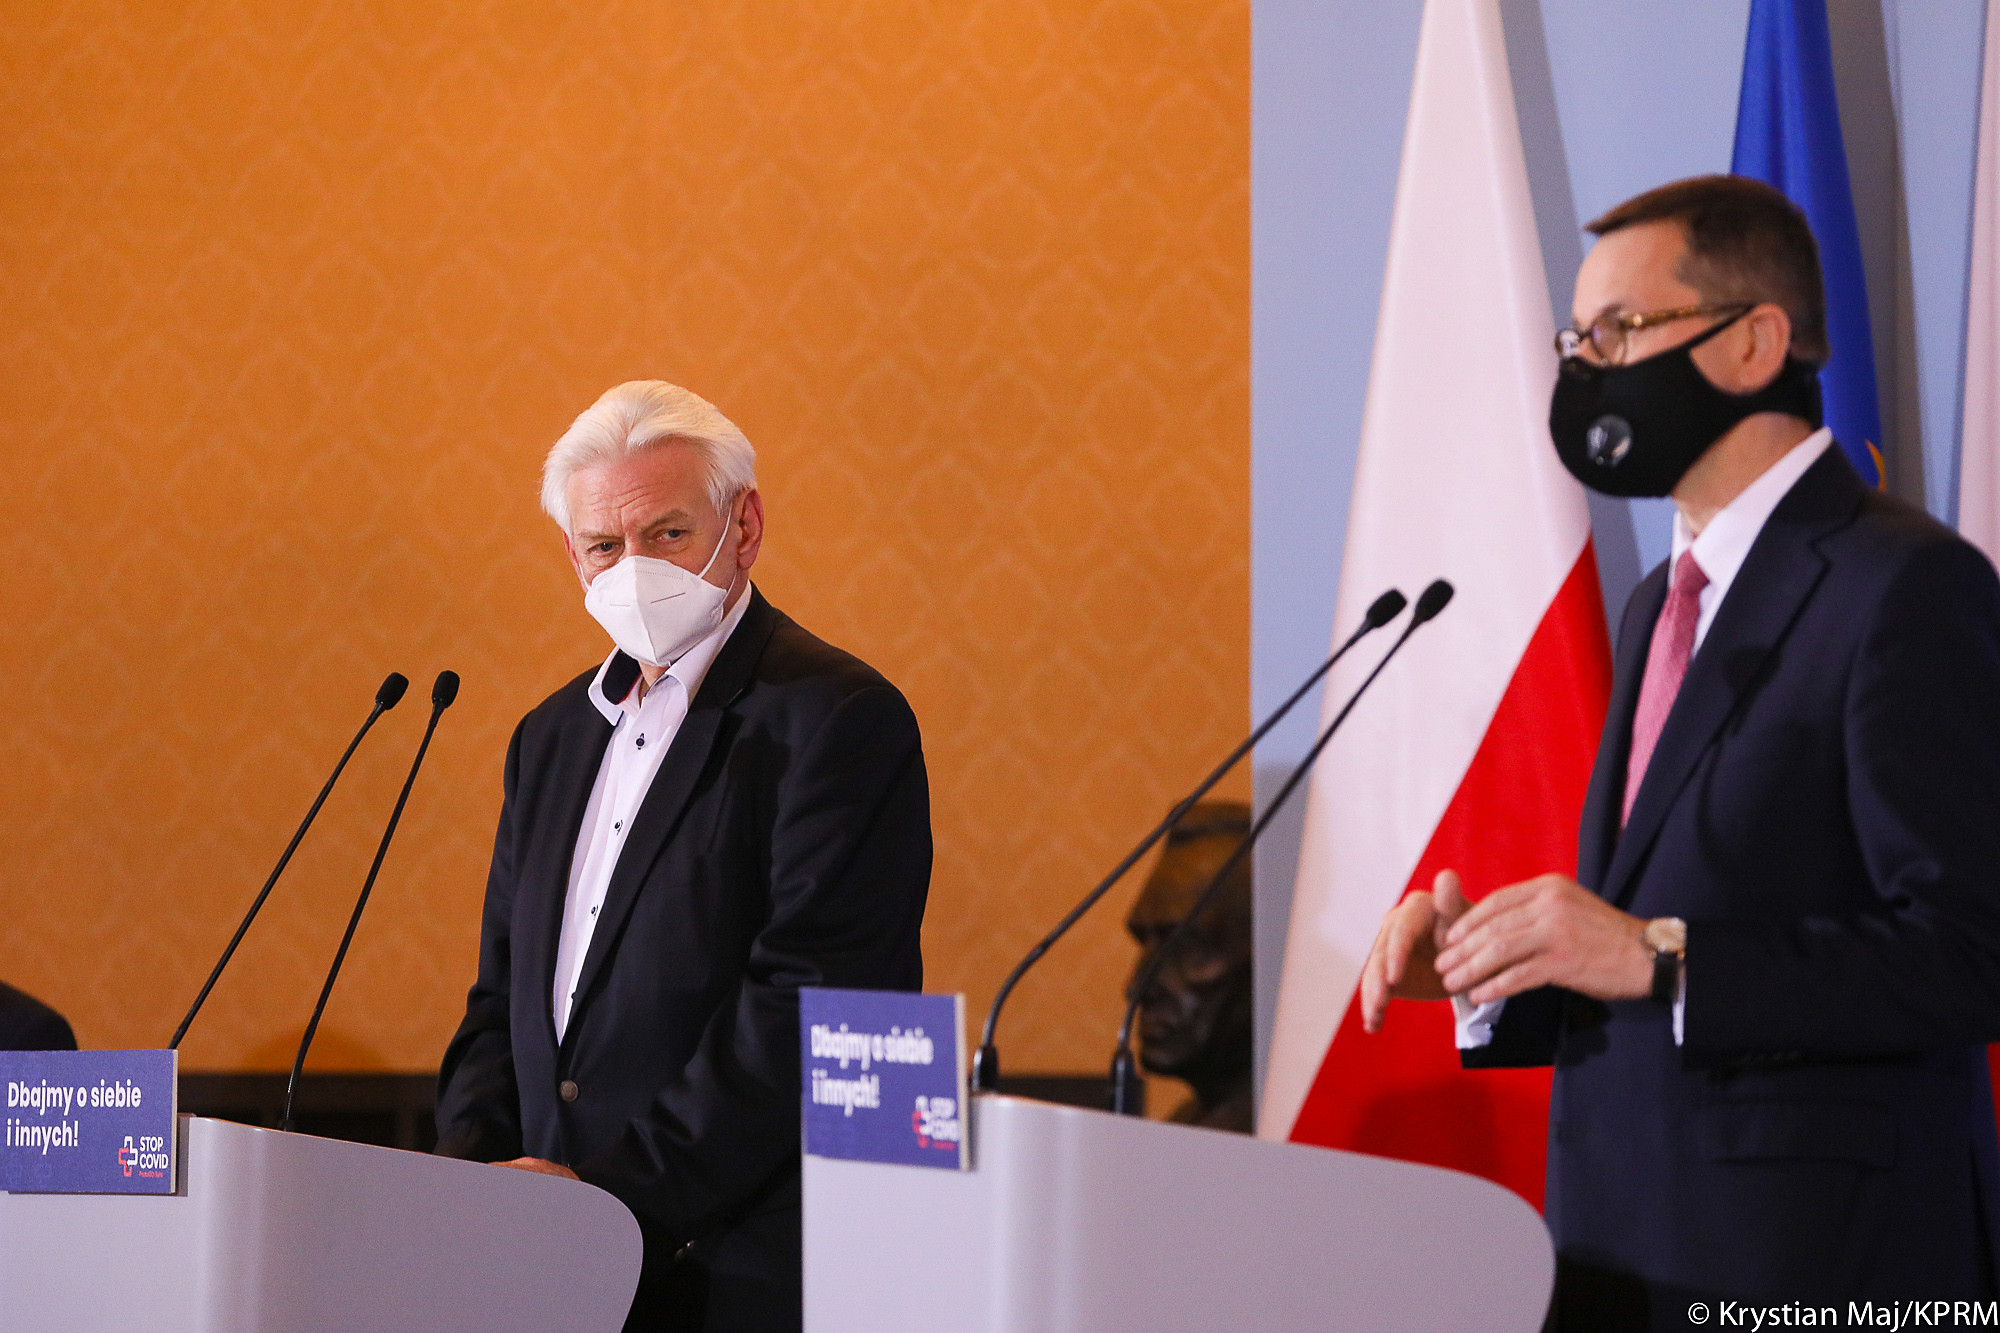 Konferencja prasowa, premier Mateusz Morawiecki i prof. Andrzej Horban stoją przy mównicach. Na twarzach mają maseczki.